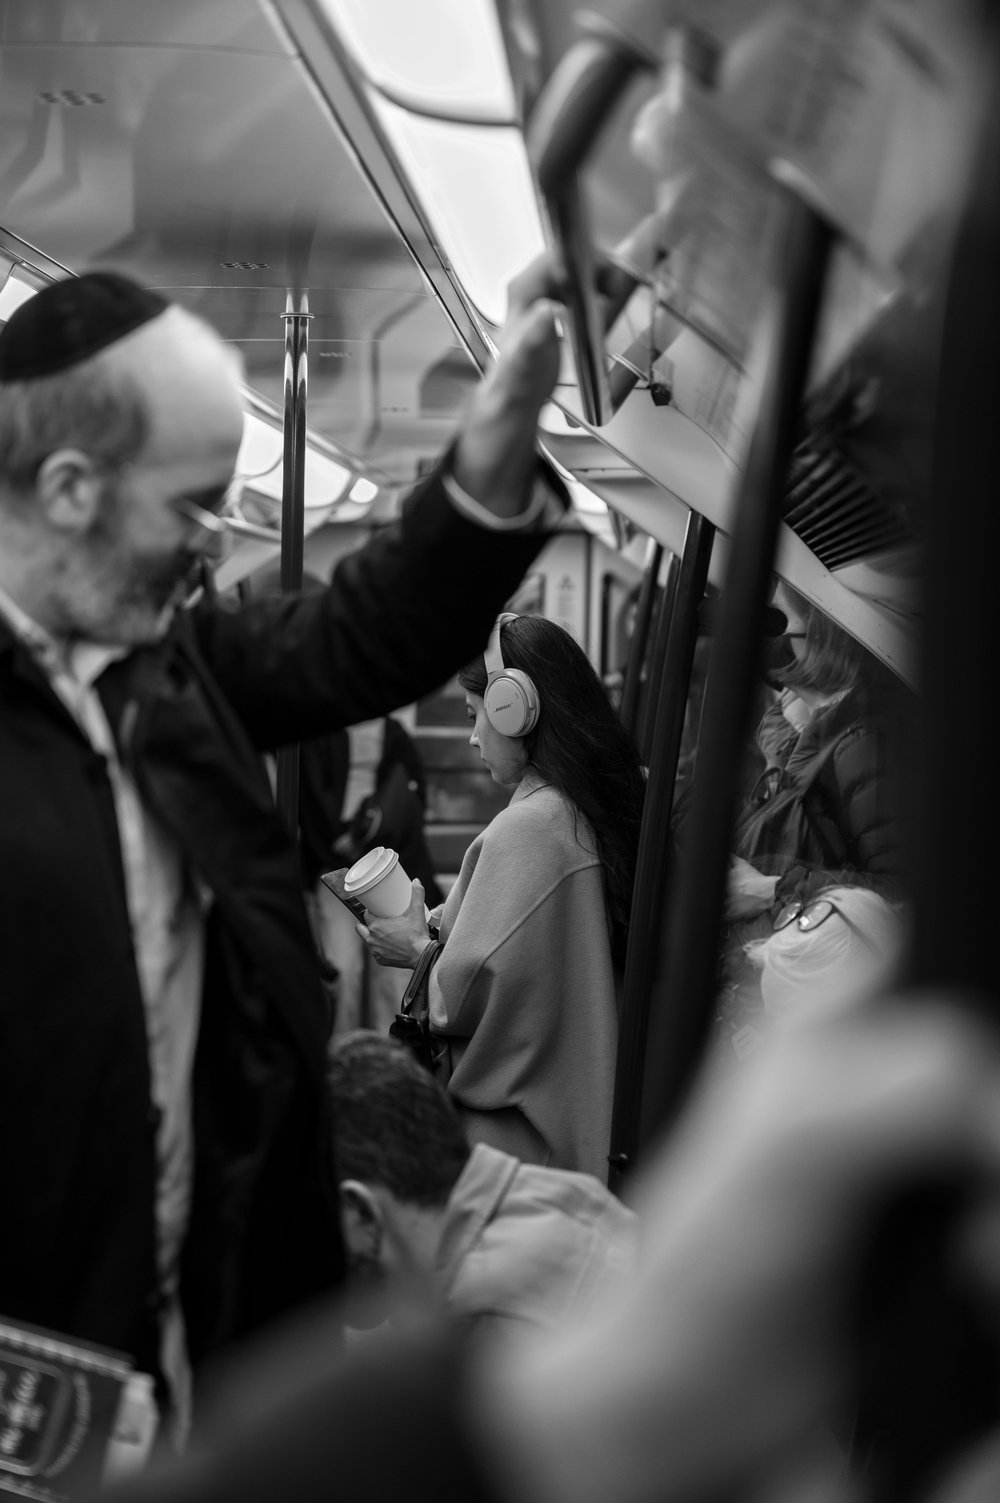 Fotos aus der Londoner U-Bahn Tube zeigen das Leben der Engländer hautnah (3)